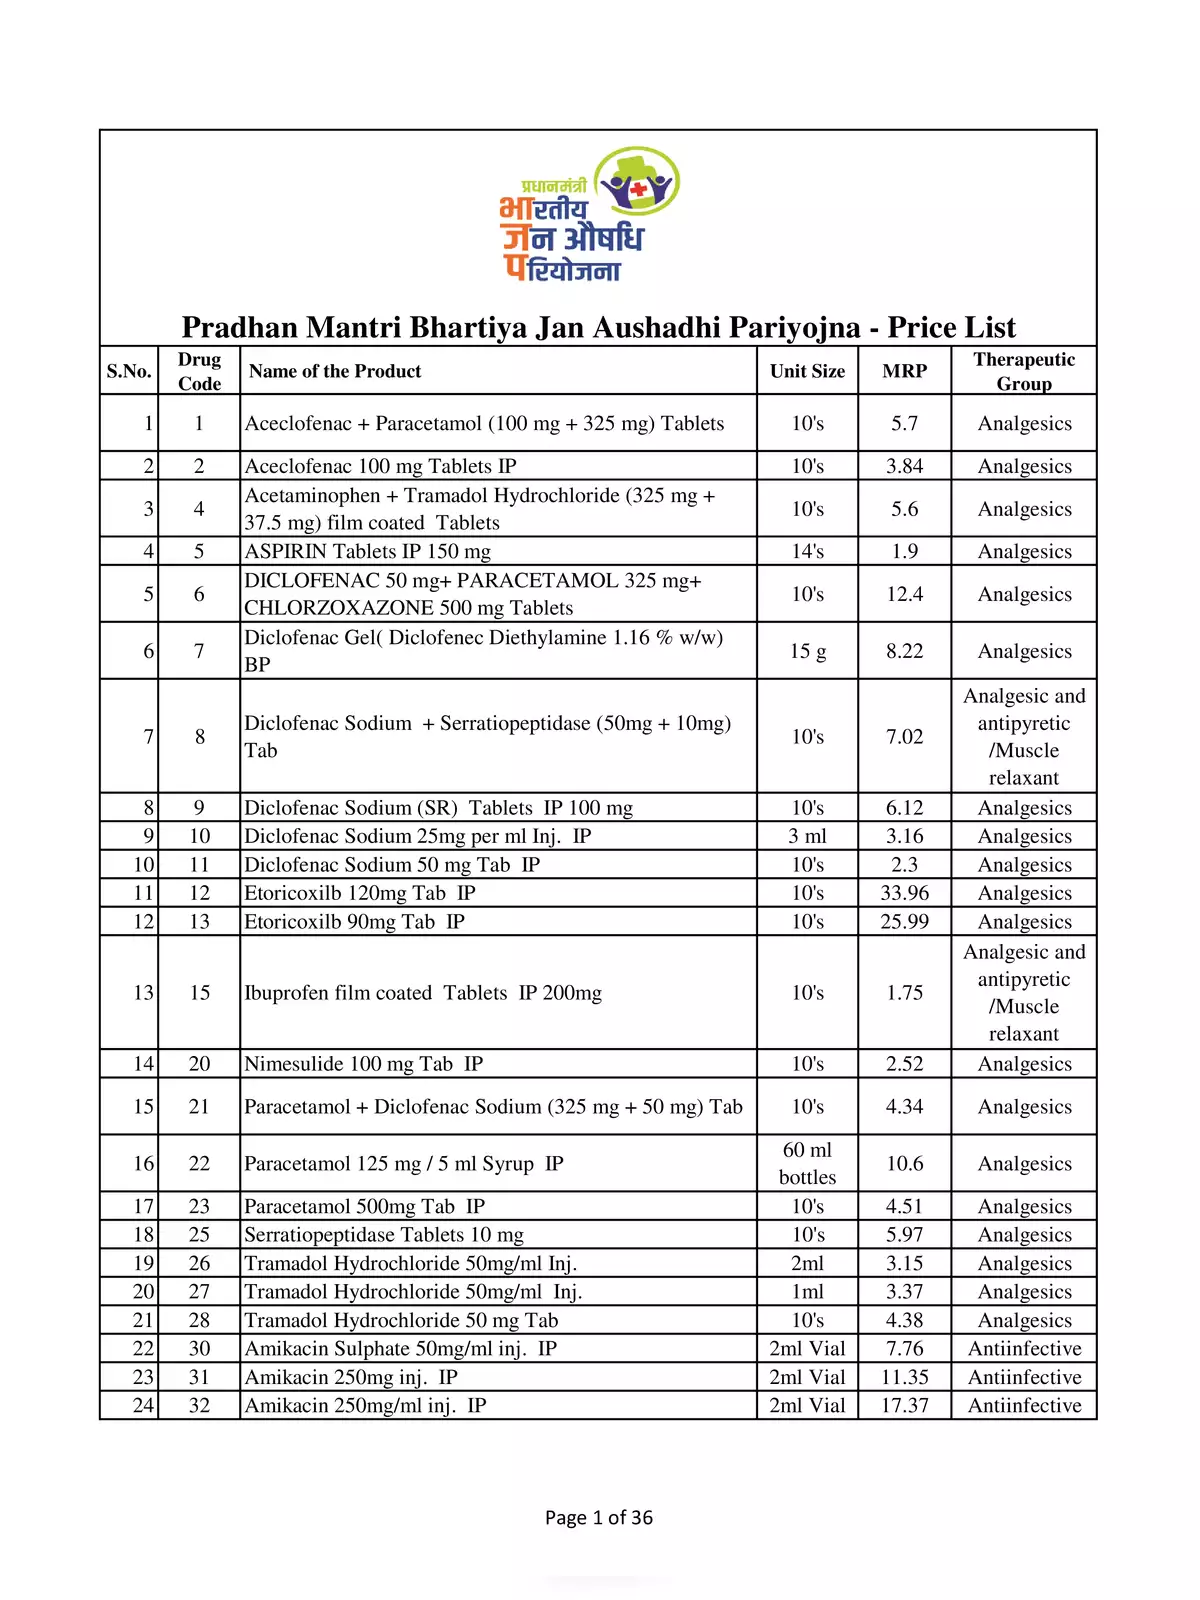 Jan Aushadhi Medicine List 2020 with Prices